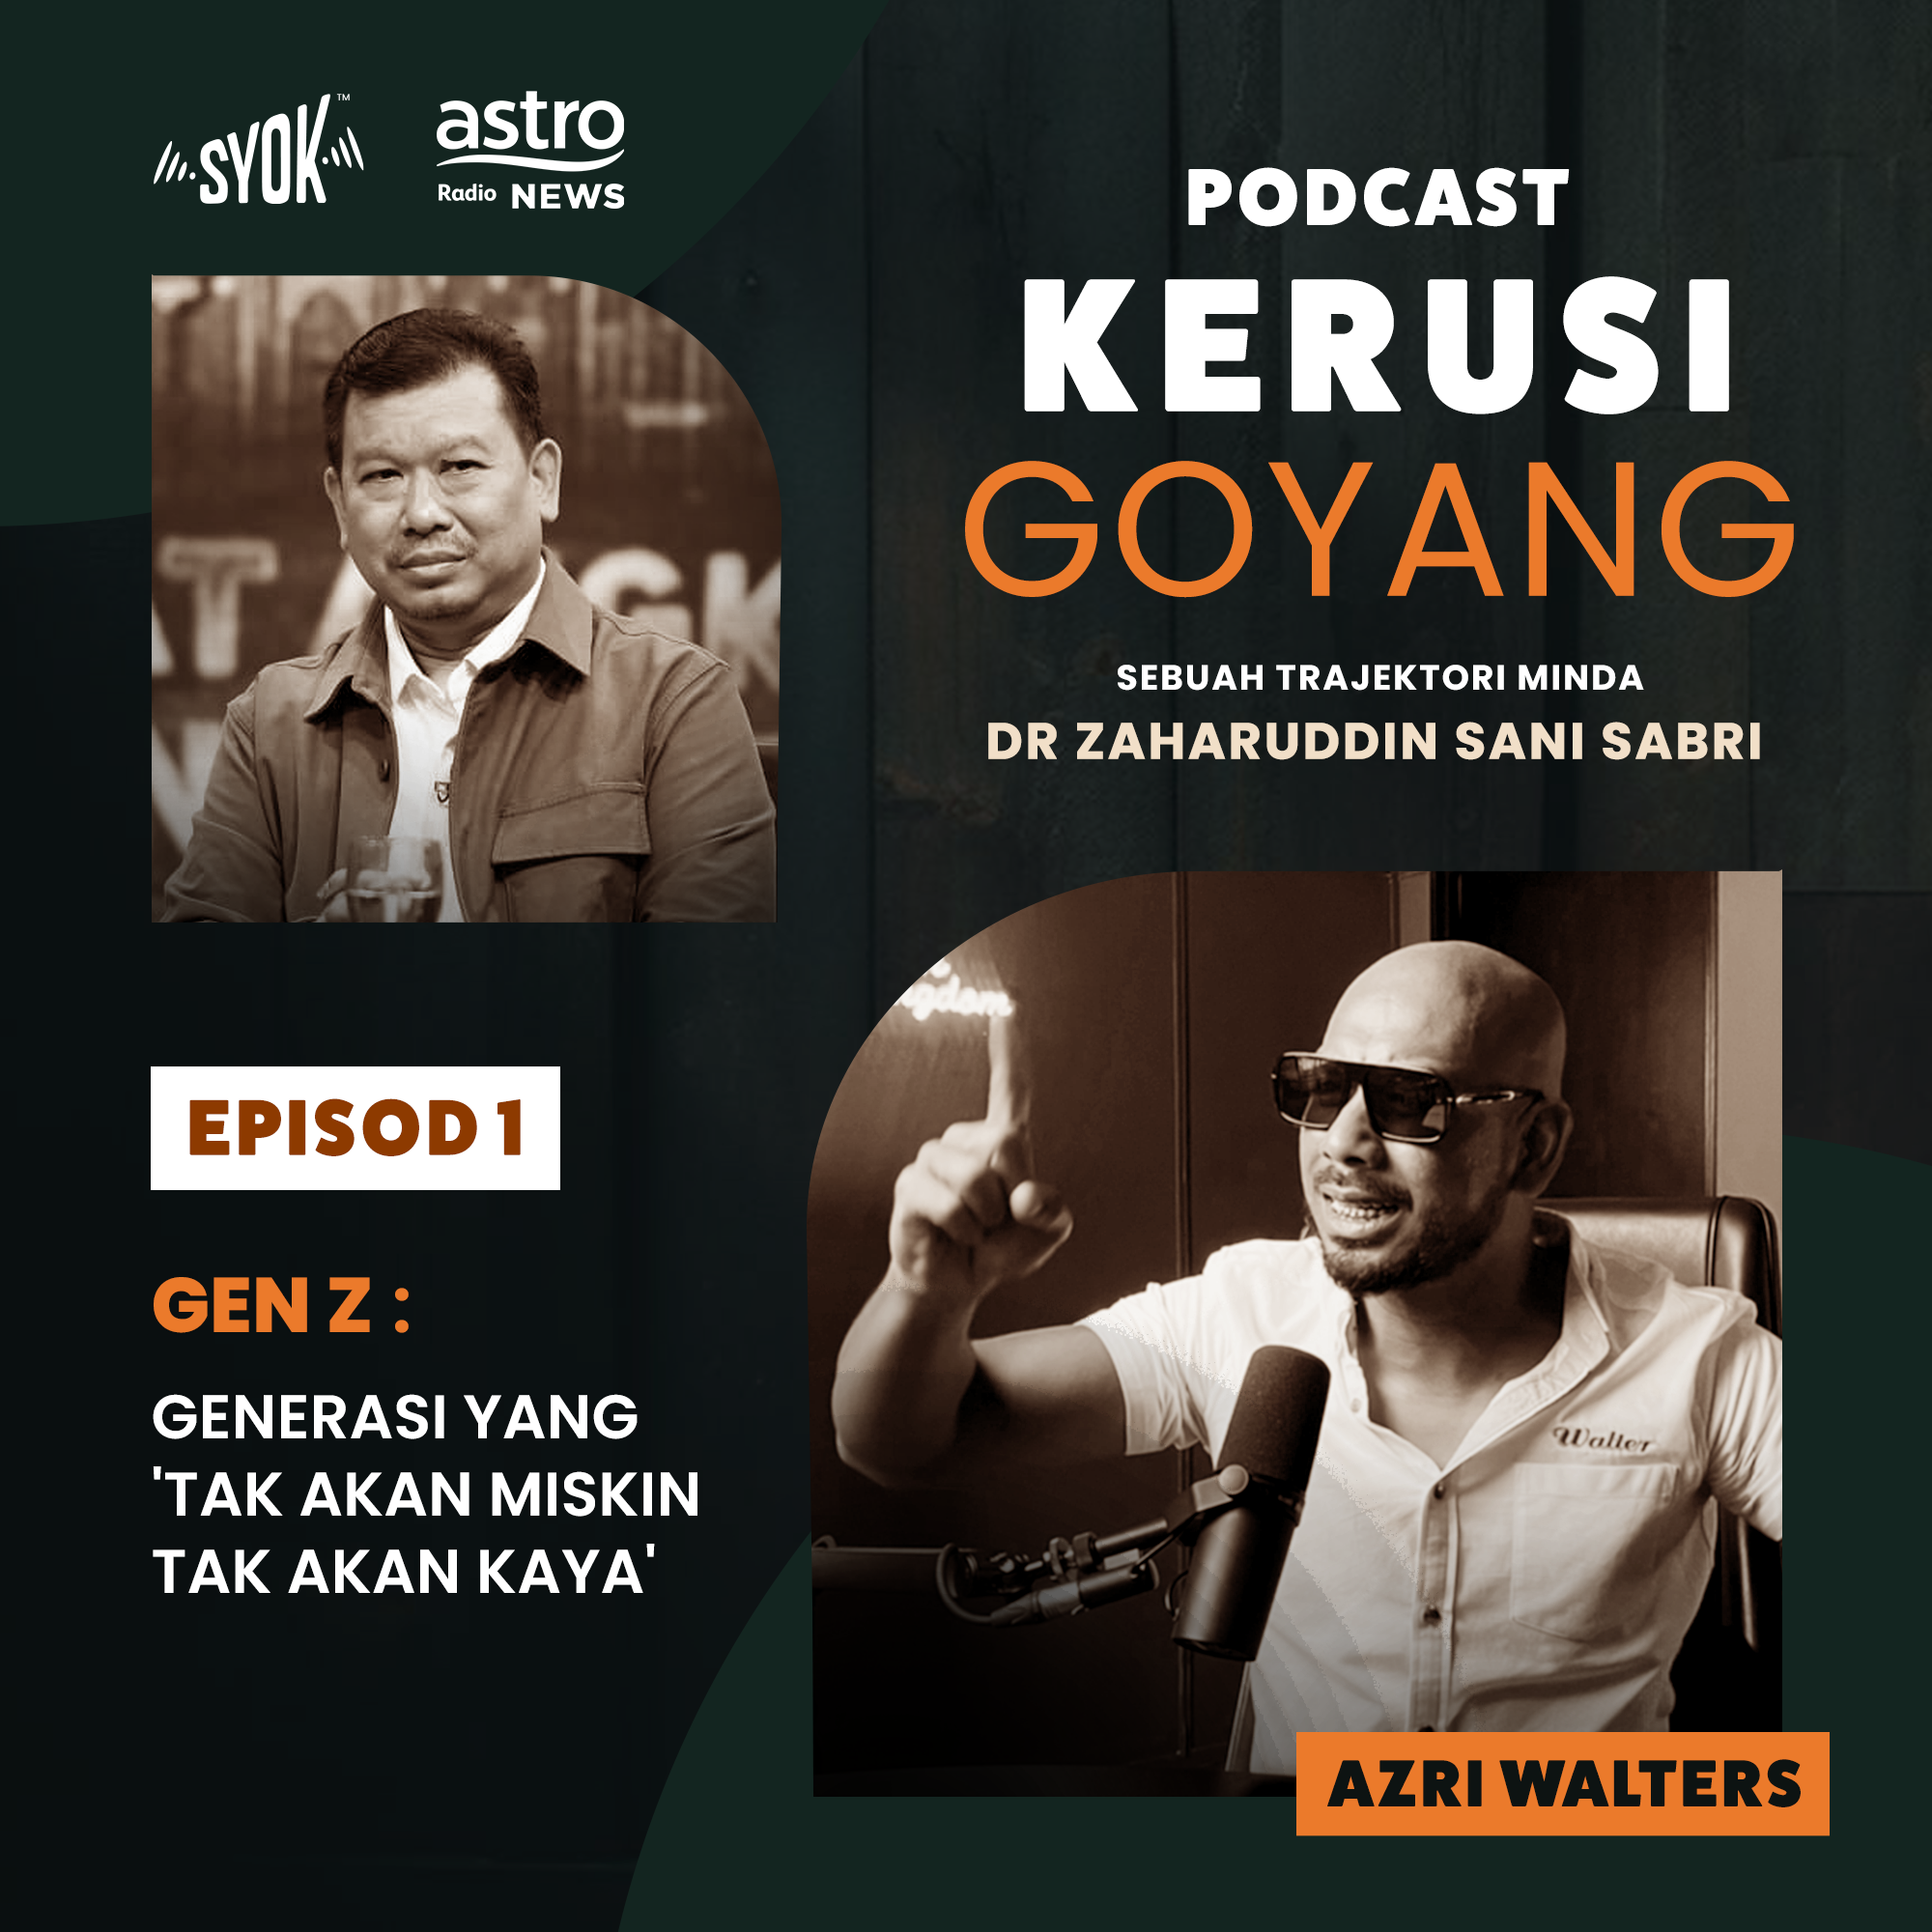 Gen - Z (Generasi yang 'Tak Akan Miskin Tak Akan Kaya') bersama Azri Walters | Podcast Kerusi Goyang EP1